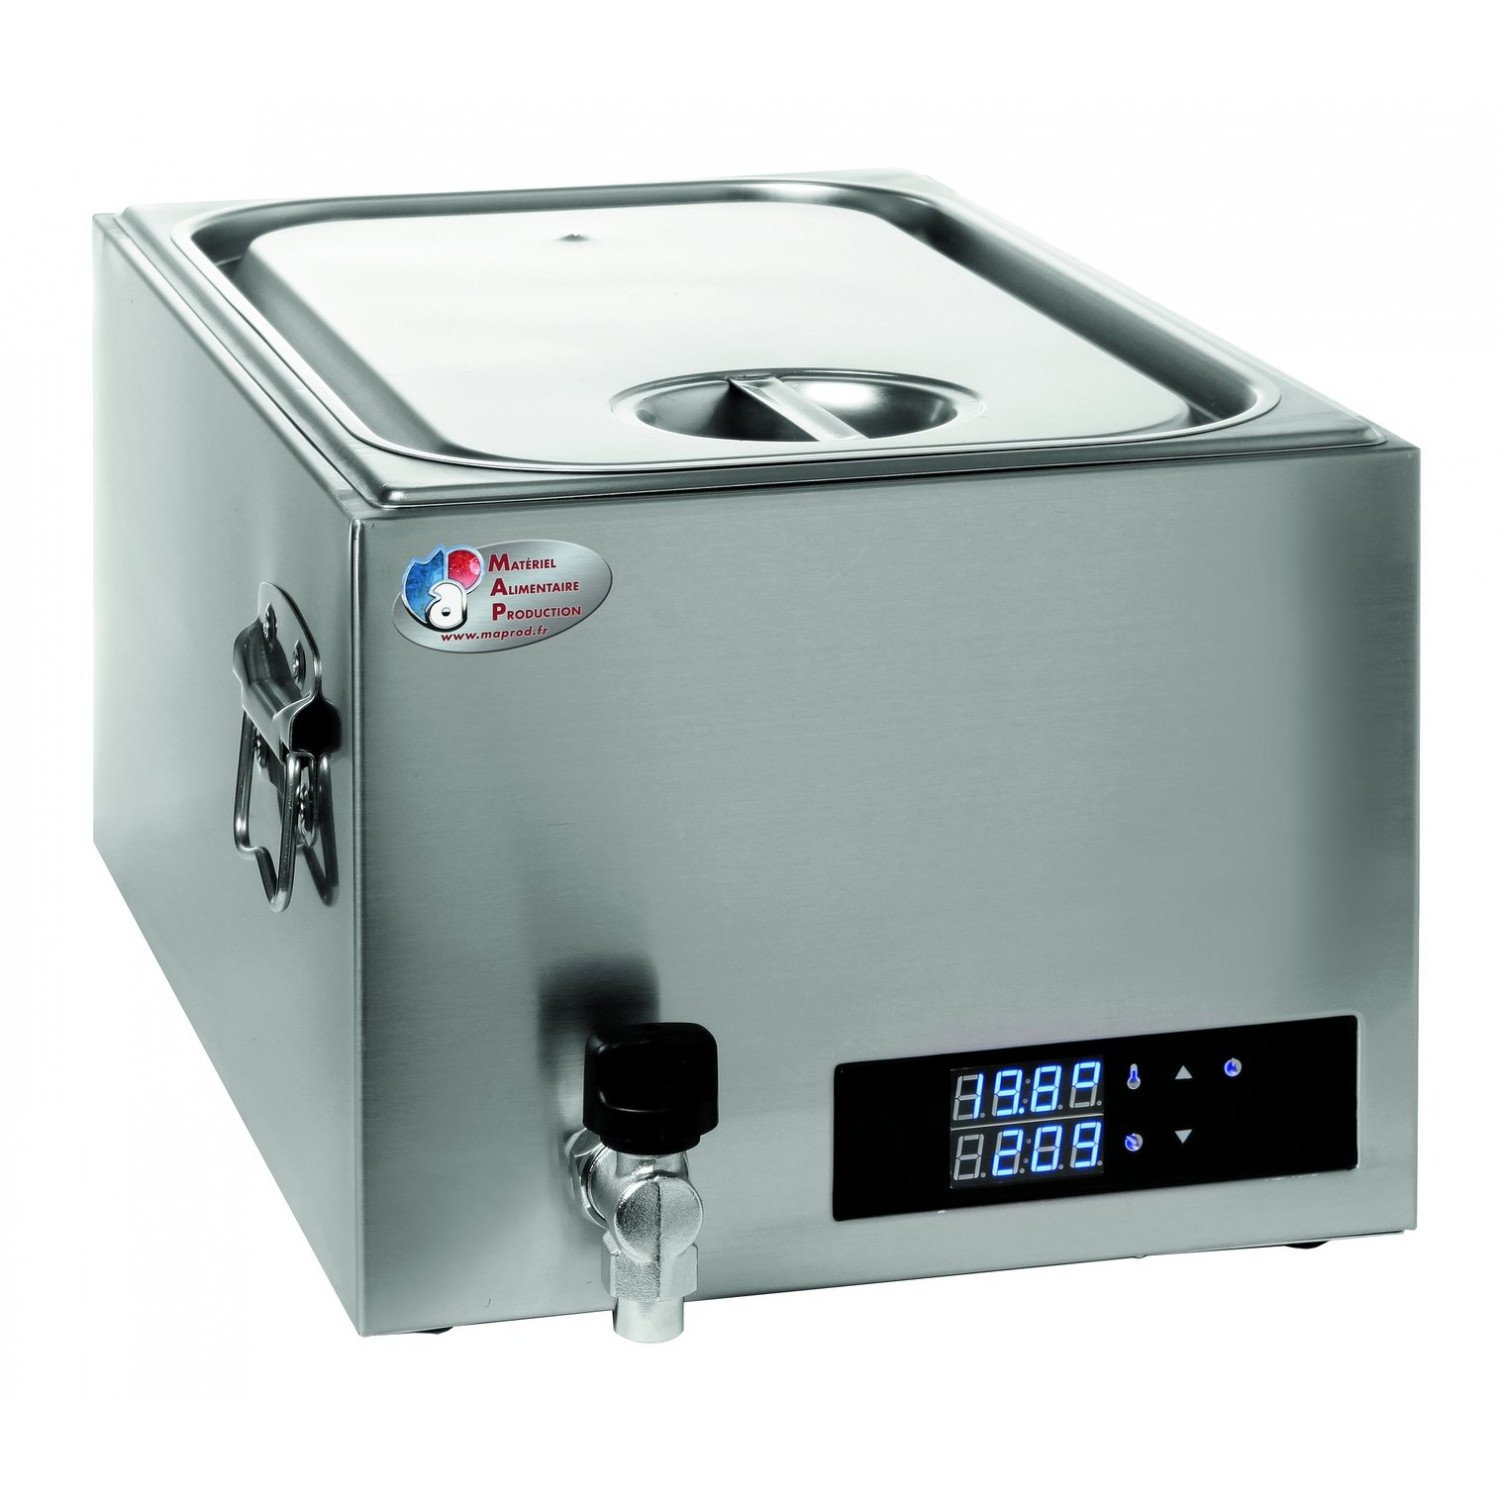 Cuiseur 20 Litres basse température - cuve GN 1/1 - inox MATERIEL